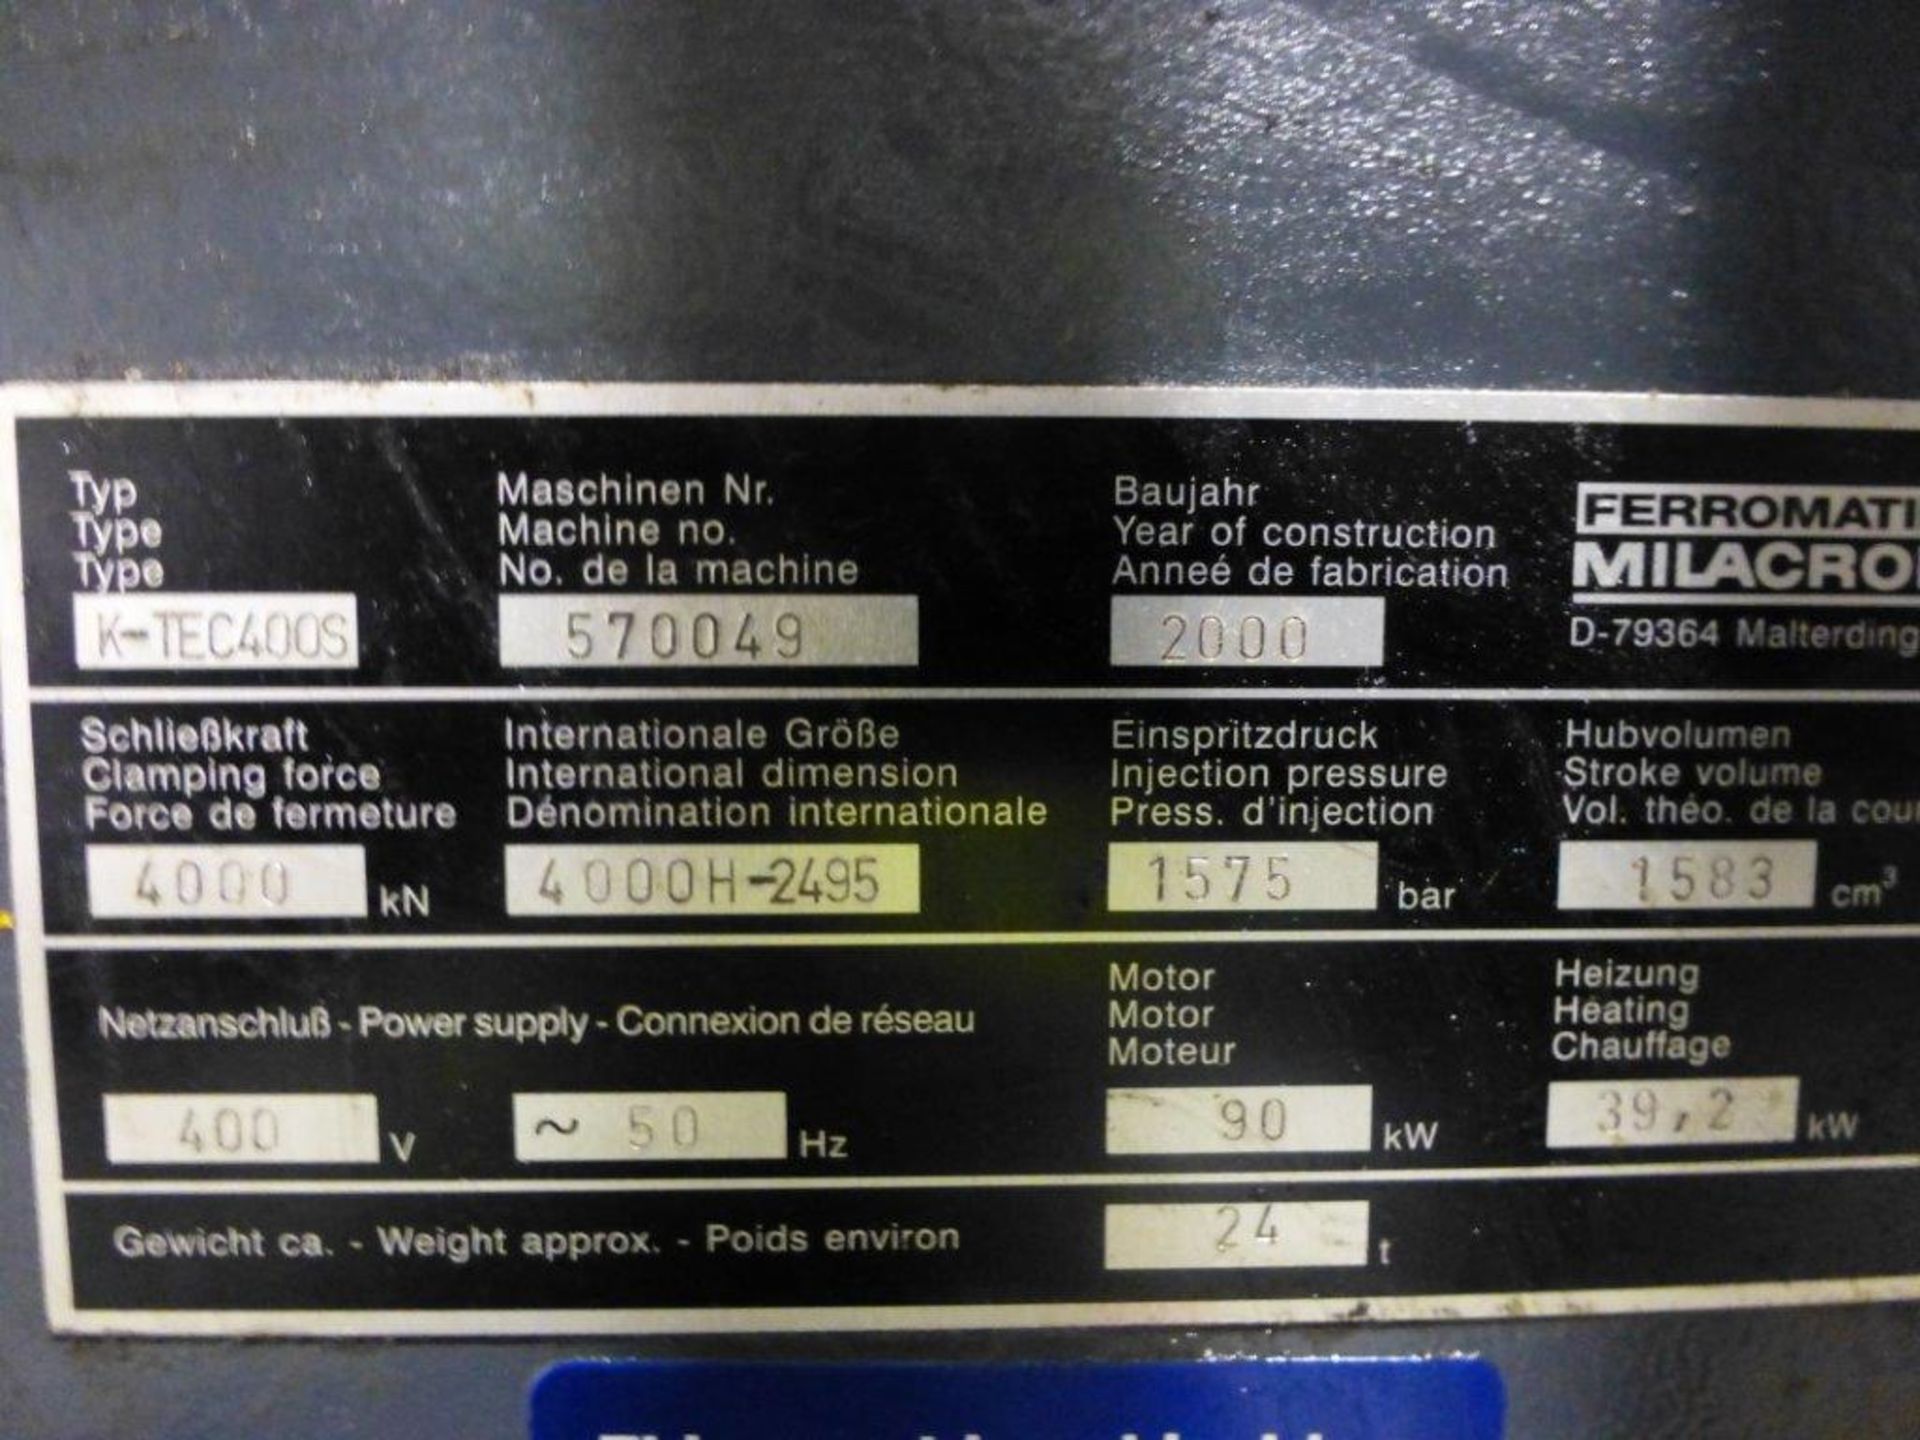 Ferromatik Milacron K-Tec 400S CNC Plastic Injection Moulding Machine Serial No. 570049 (2000) - Image 7 of 7